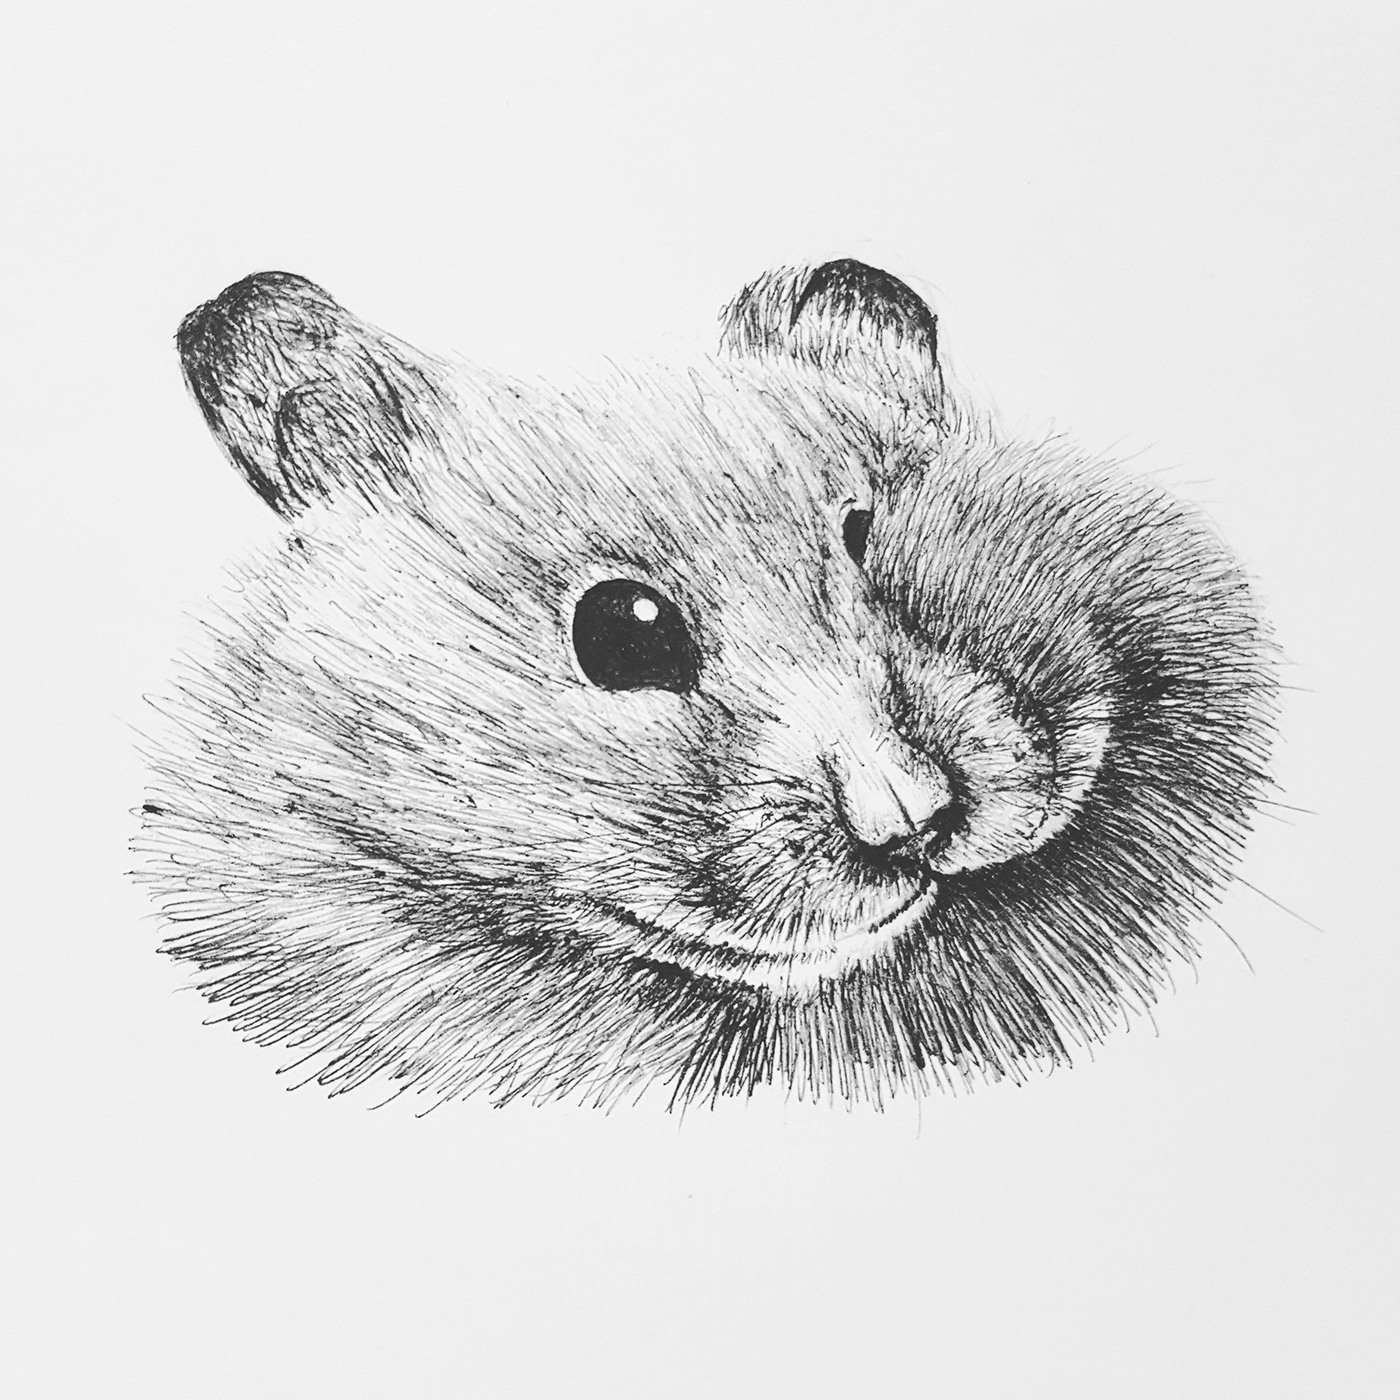 #sketch #Drawings #quick #bird  #fox #Hamster #Pen